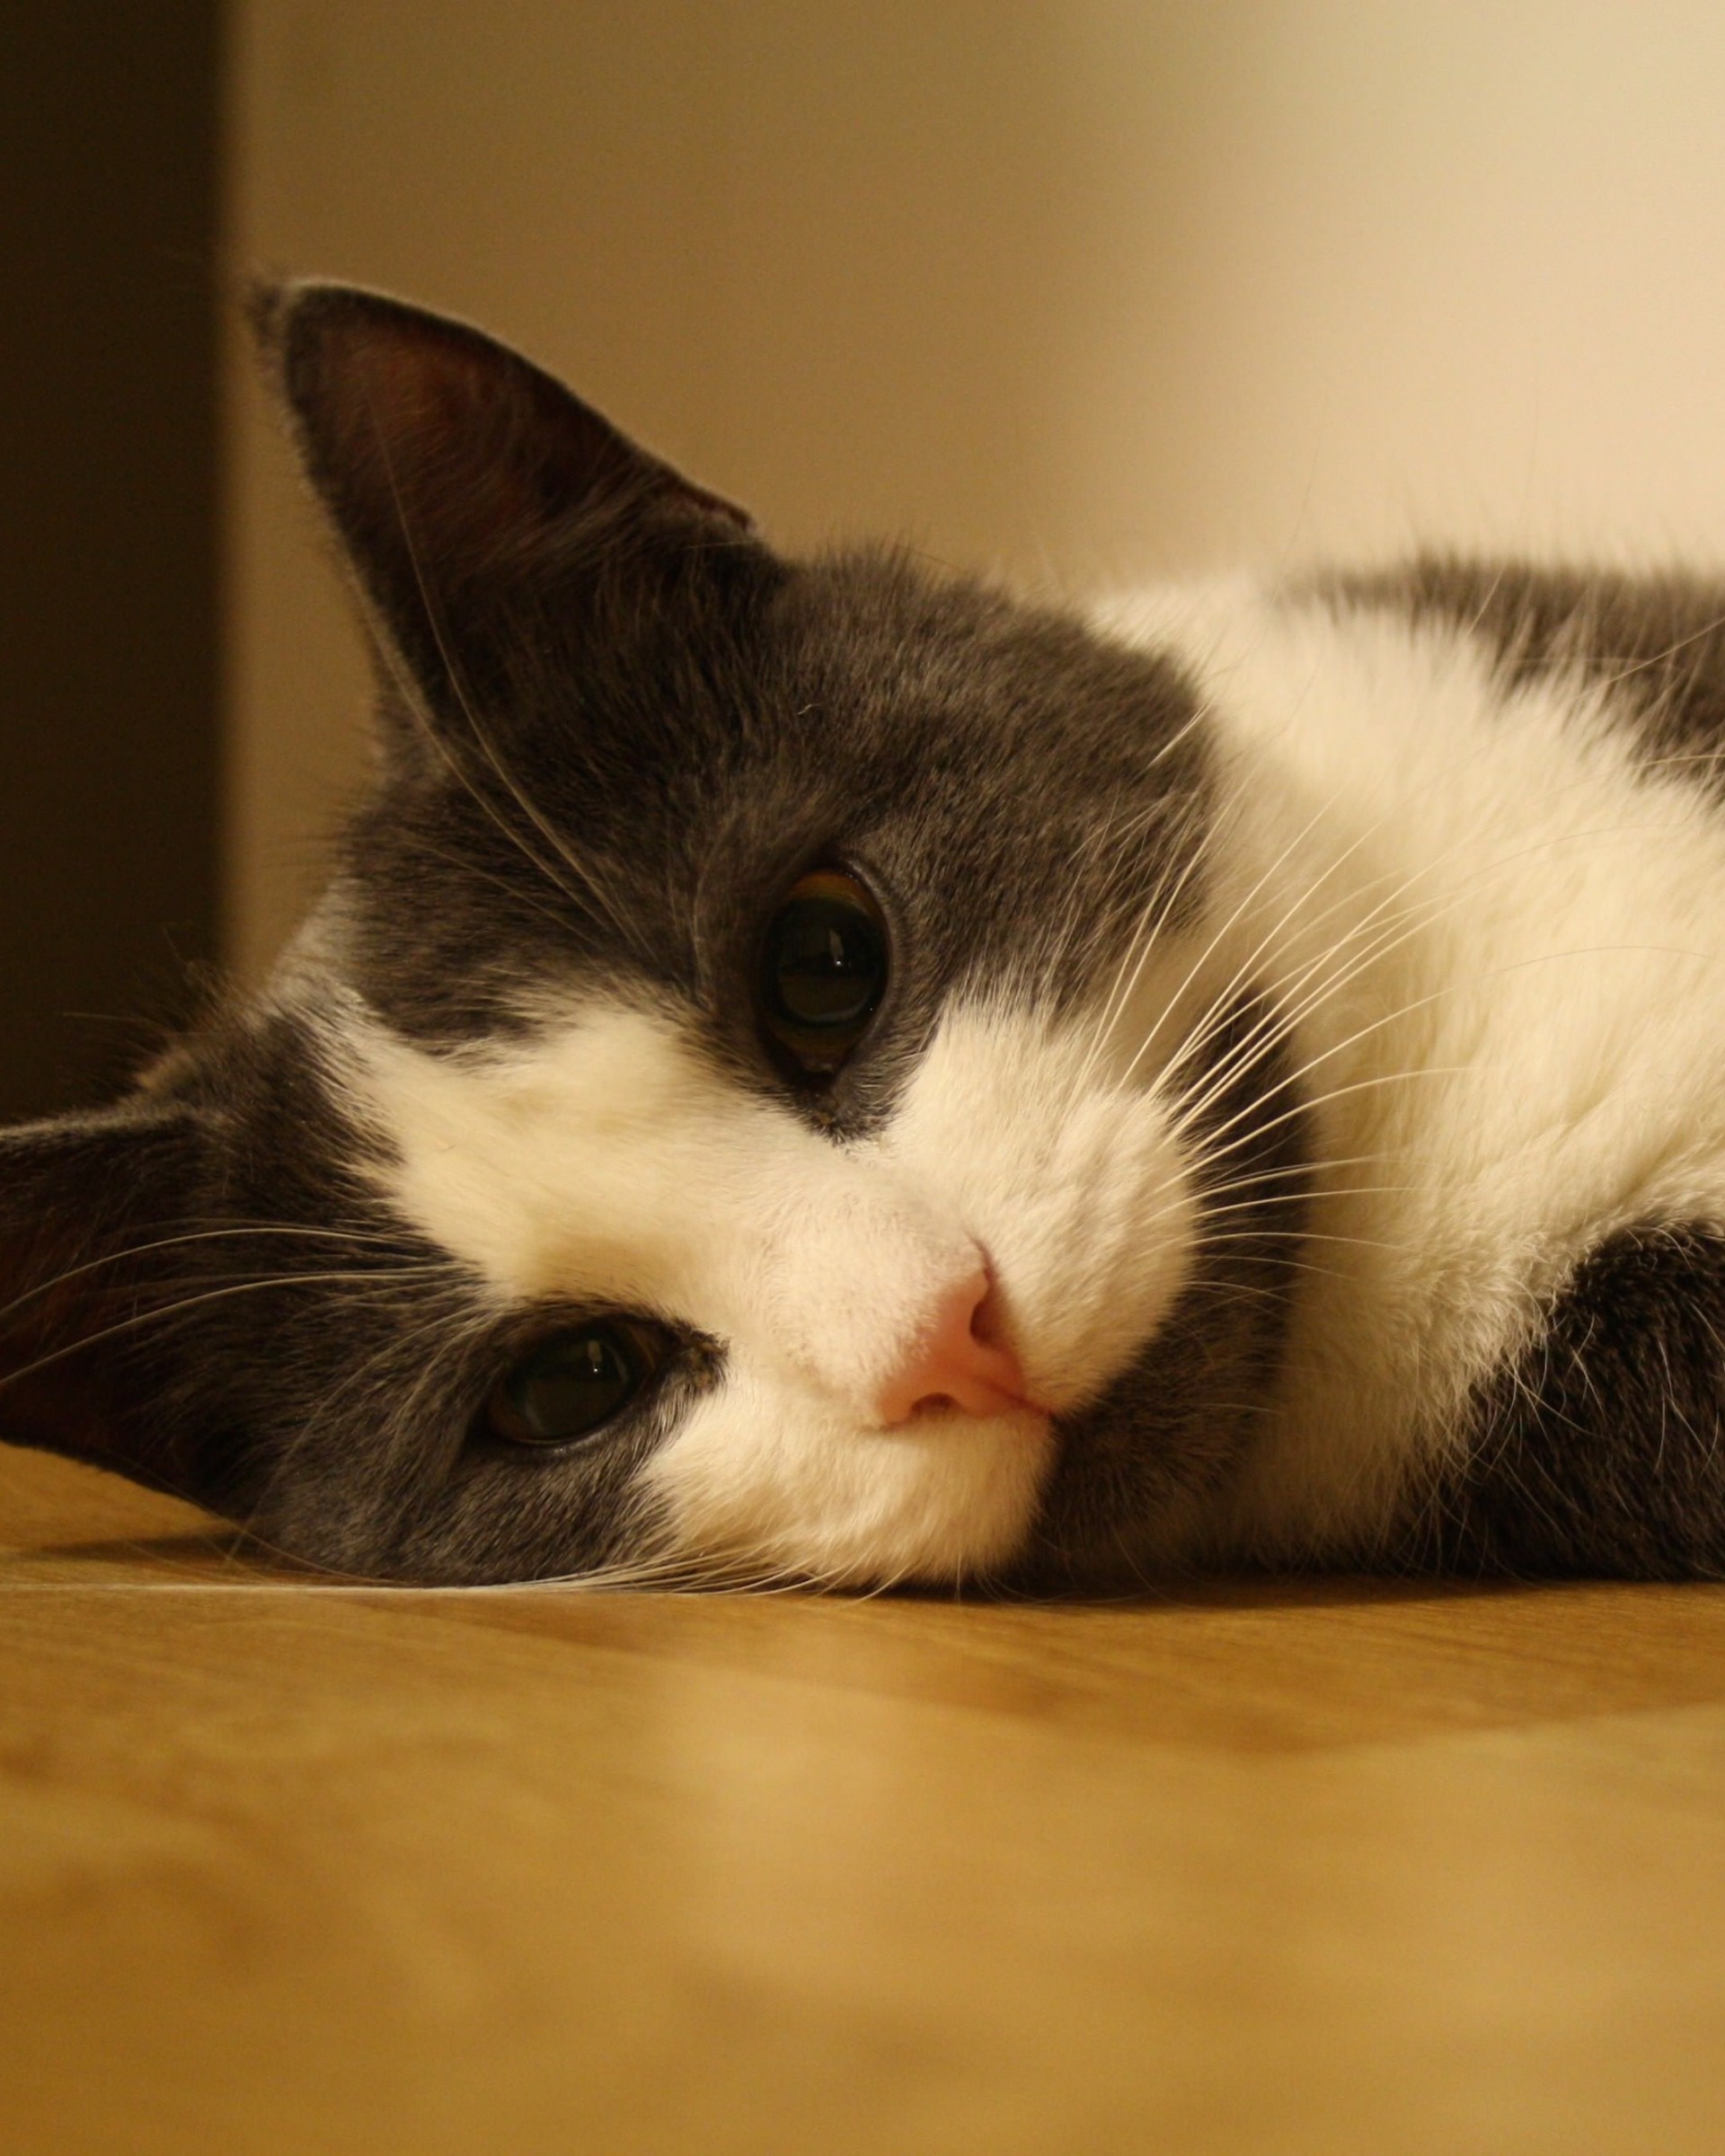 Sweet Cat Lying On The Floor Wallpaper for Google Nexus 7